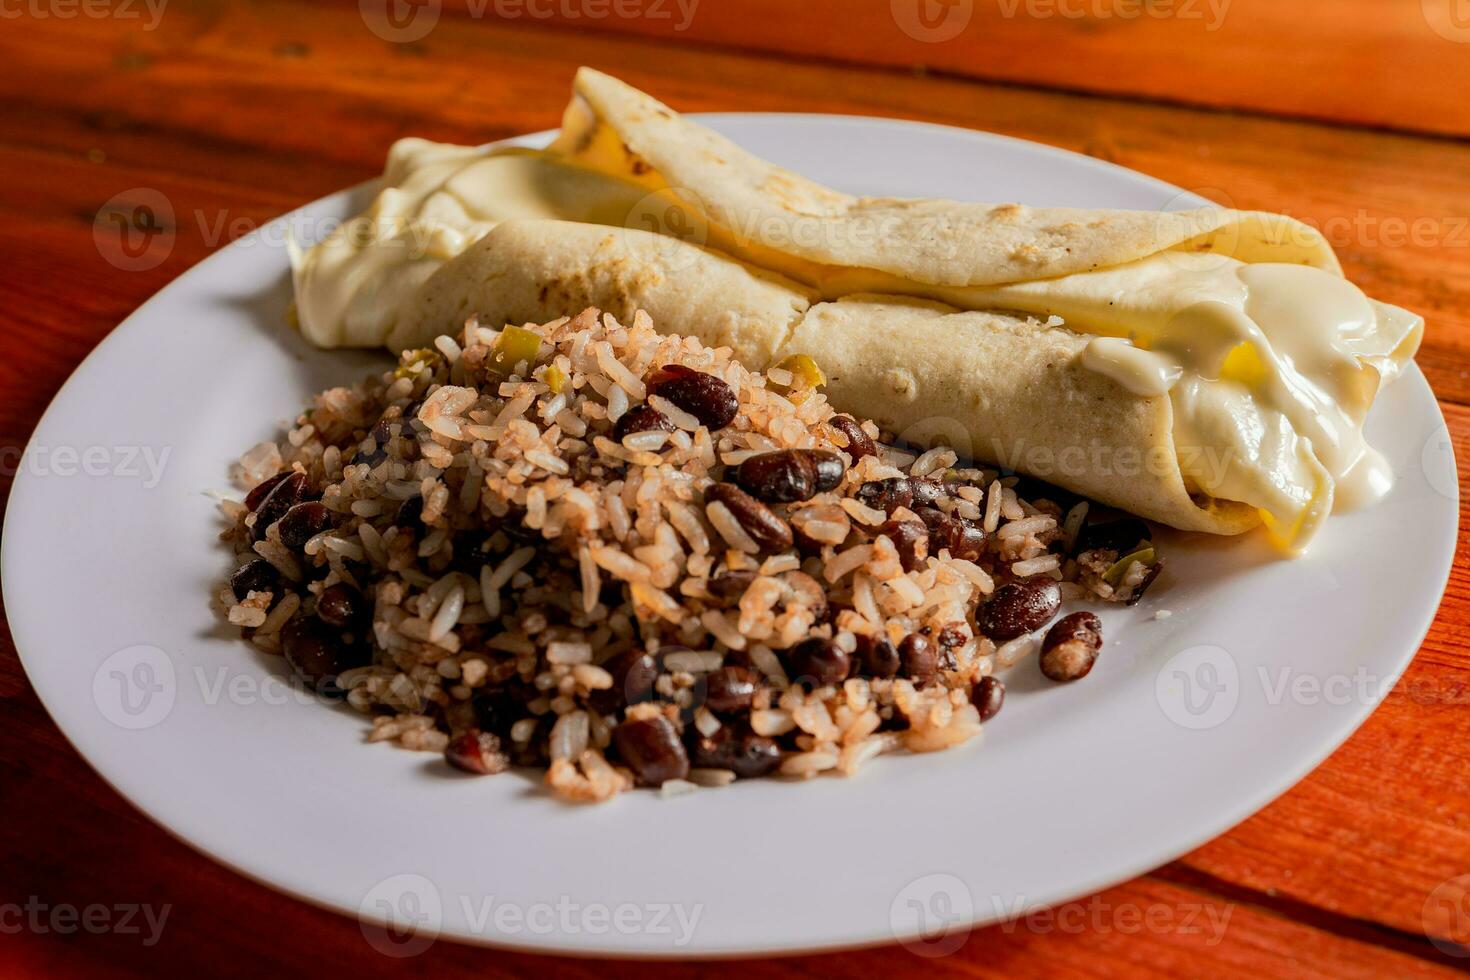 traditioneel gallo pinto met quesillo geserveerd Aan houten tafel. Nicaraguaanse galopperen met quesillo Aan de tafel. typisch Nicaraguaanse voedingsmiddelen foto